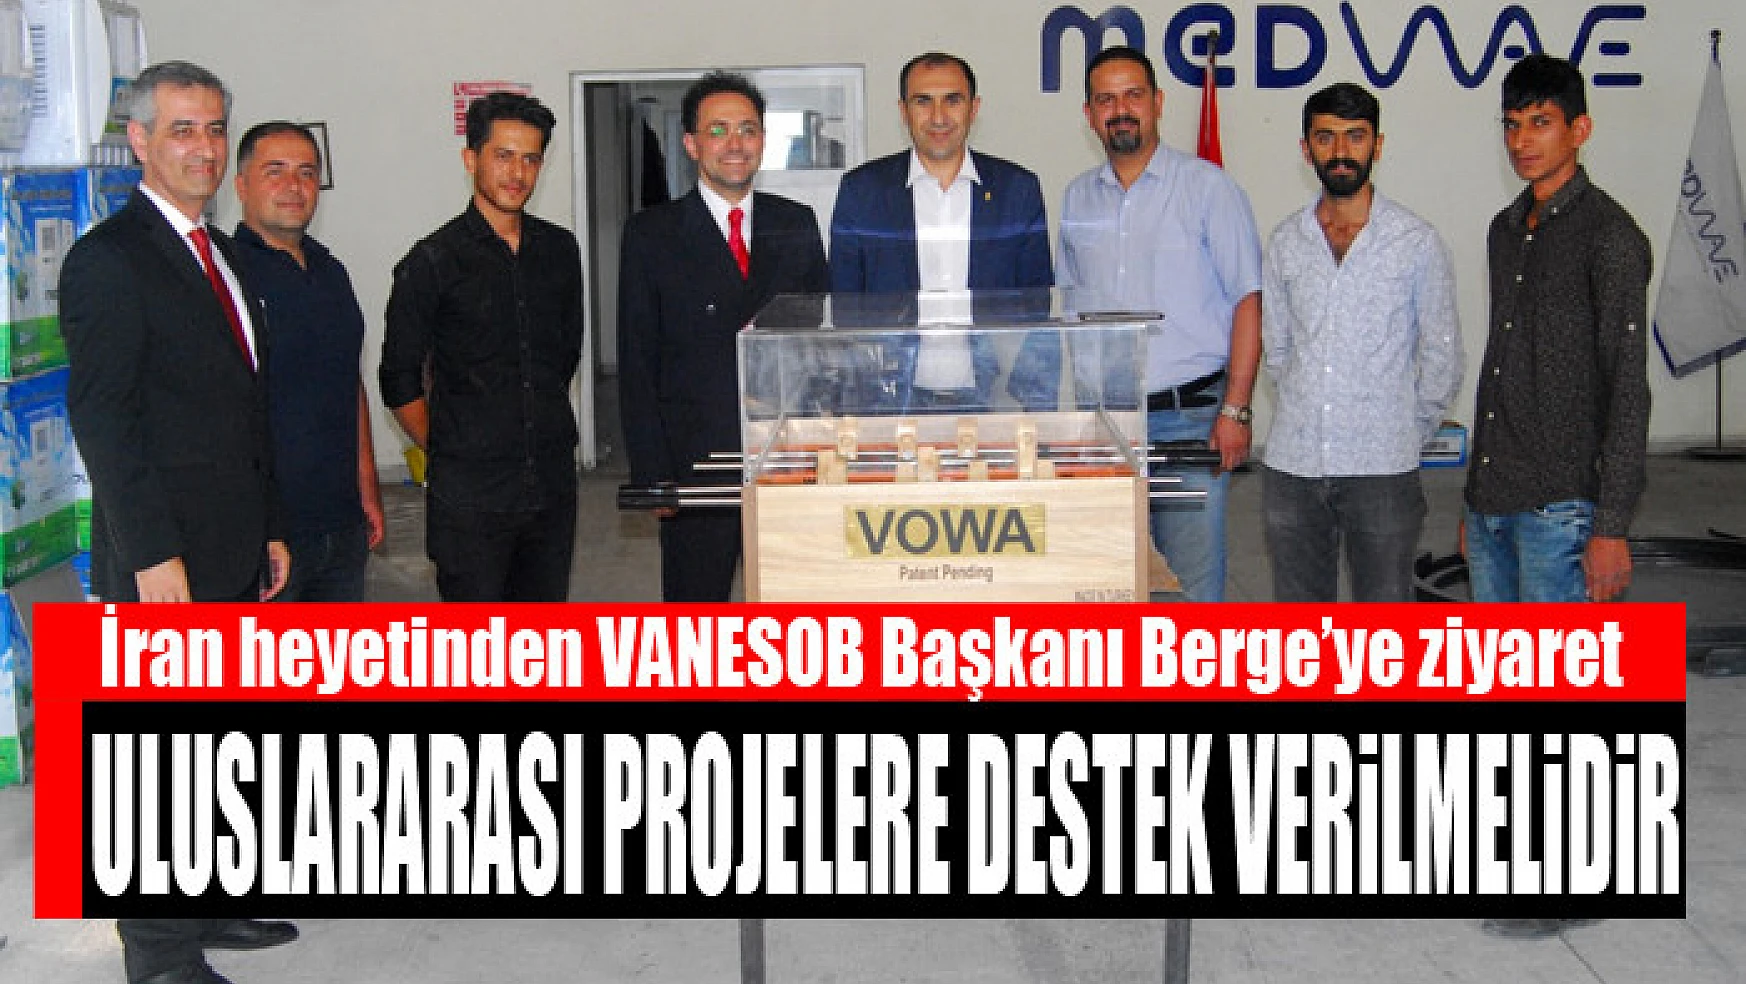 İran heyetinden VANESOB Başkanı Berge'ye ziyaret Uluslararası projelere destek verilmelidir